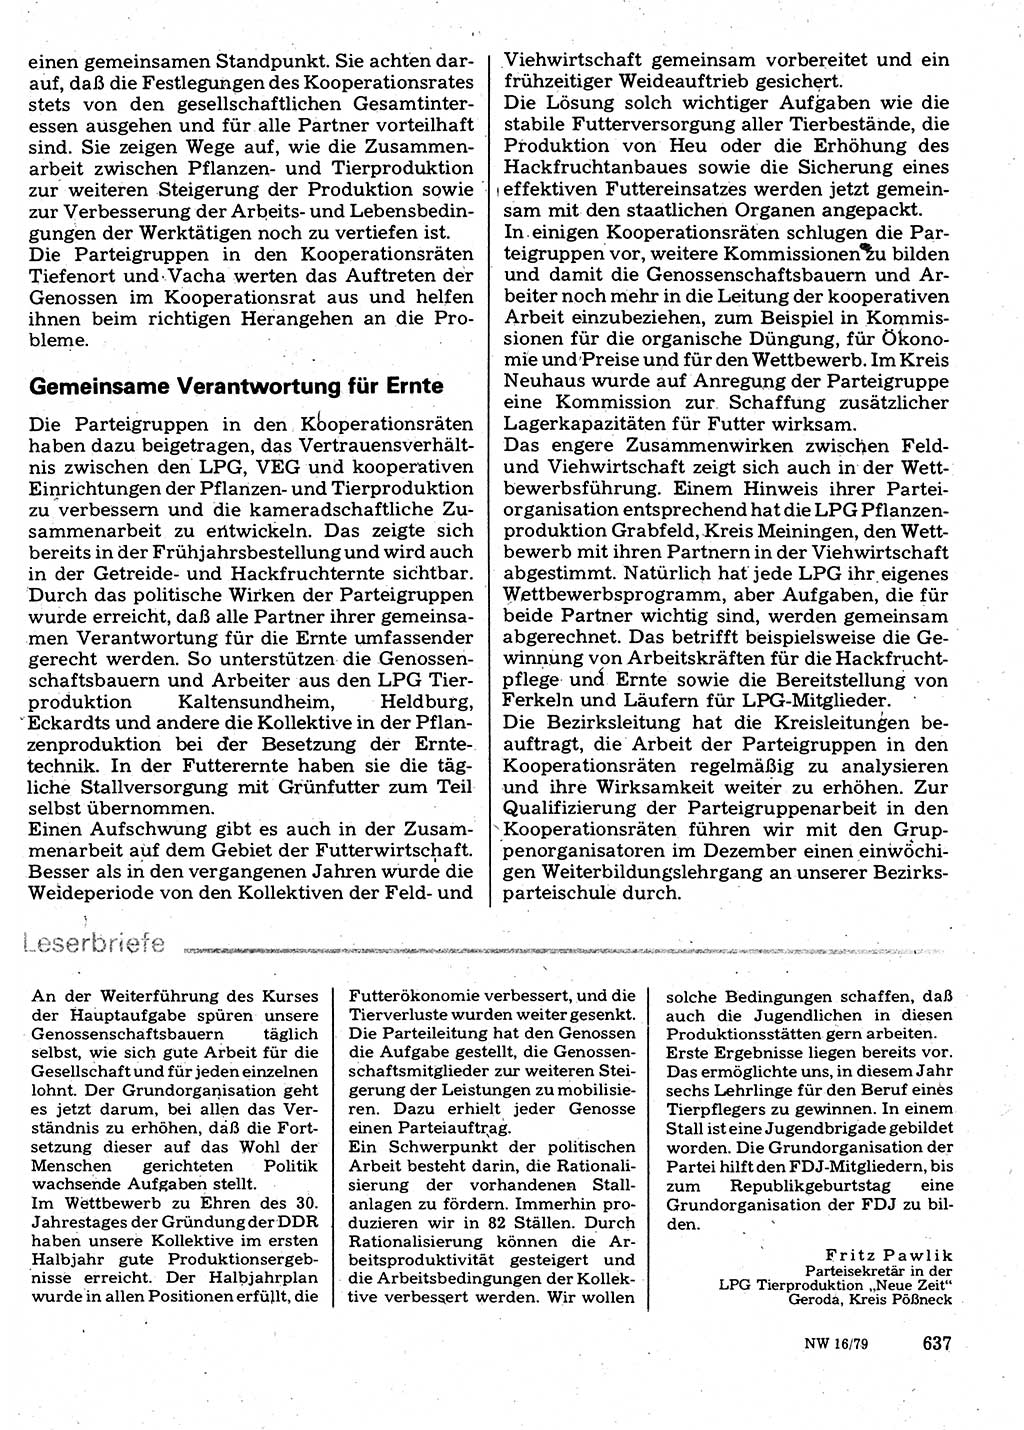 Neuer Weg (NW), Organ des Zentralkomitees (ZK) der SED (Sozialistische Einheitspartei Deutschlands) für Fragen des Parteilebens, 34. Jahrgang [Deutsche Demokratische Republik (DDR)] 1979, Seite 637 (NW ZK SED DDR 1979, S. 637)